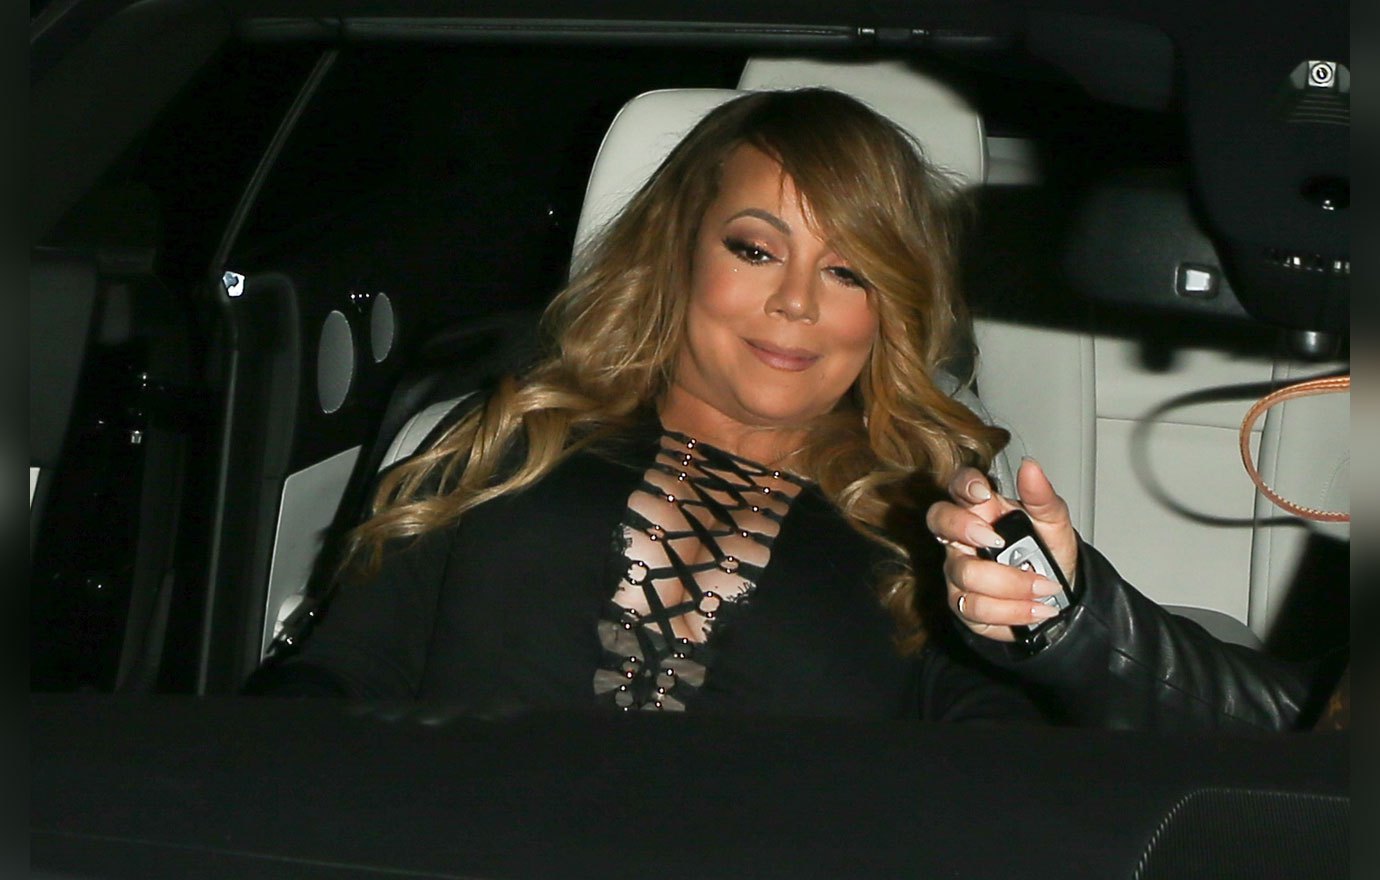 Críticas a Mariah Carey por su peso, ¿y qué?